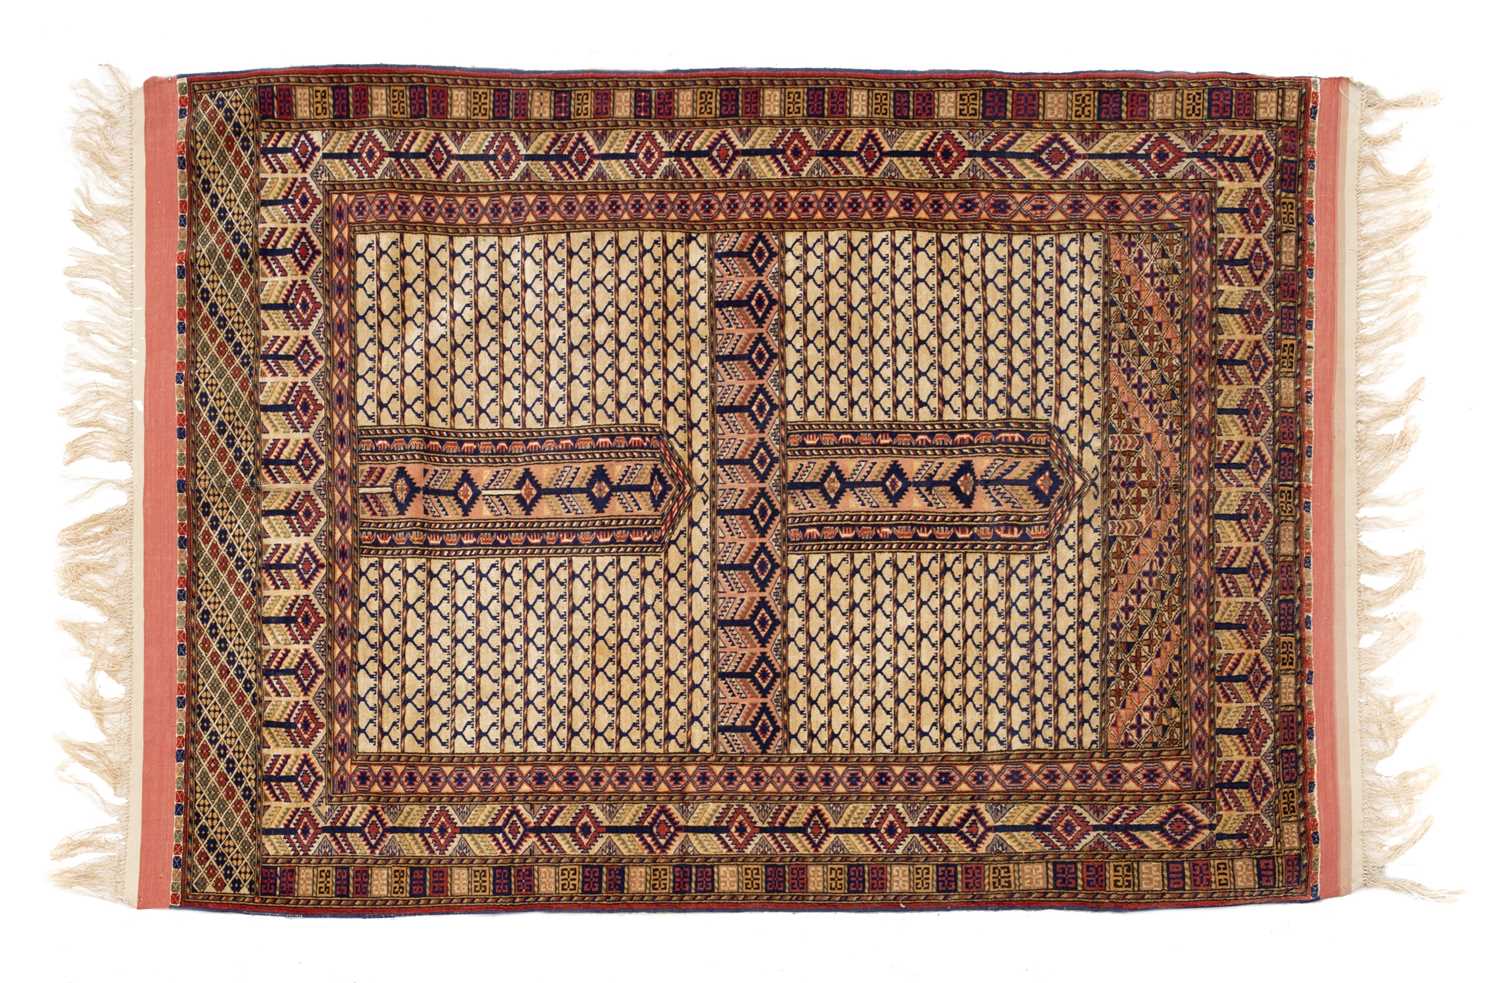 Lot 178 - A fine Persian rug